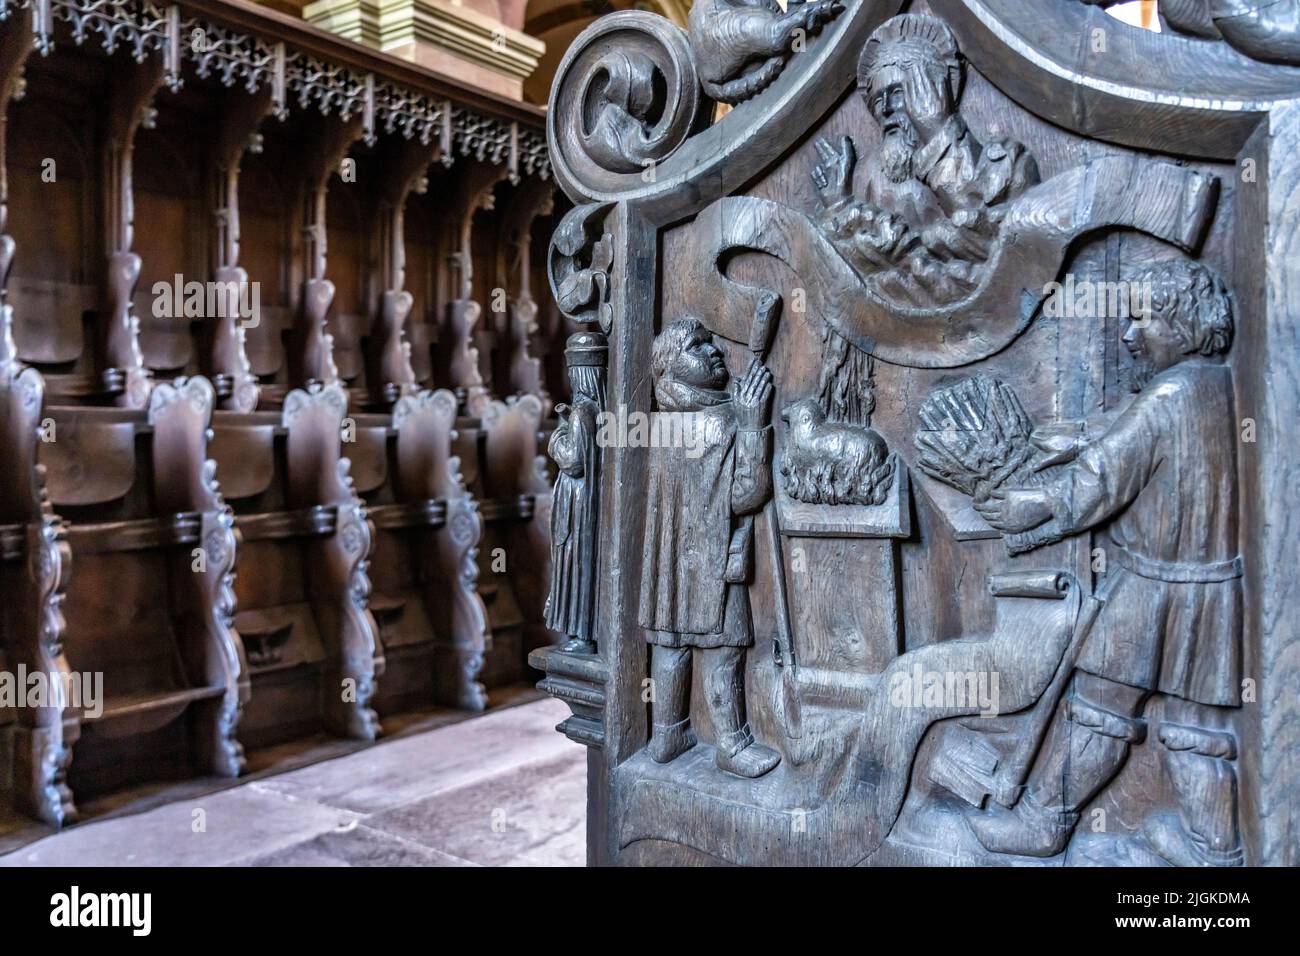 Holzschnitzerei am Chor der Klosterkirche, Kloster Maulbronn, Maulbronn, Baden-Württemberg, Deutschland | esculturas en madera del coro, Maulbronn Monast Foto de stock